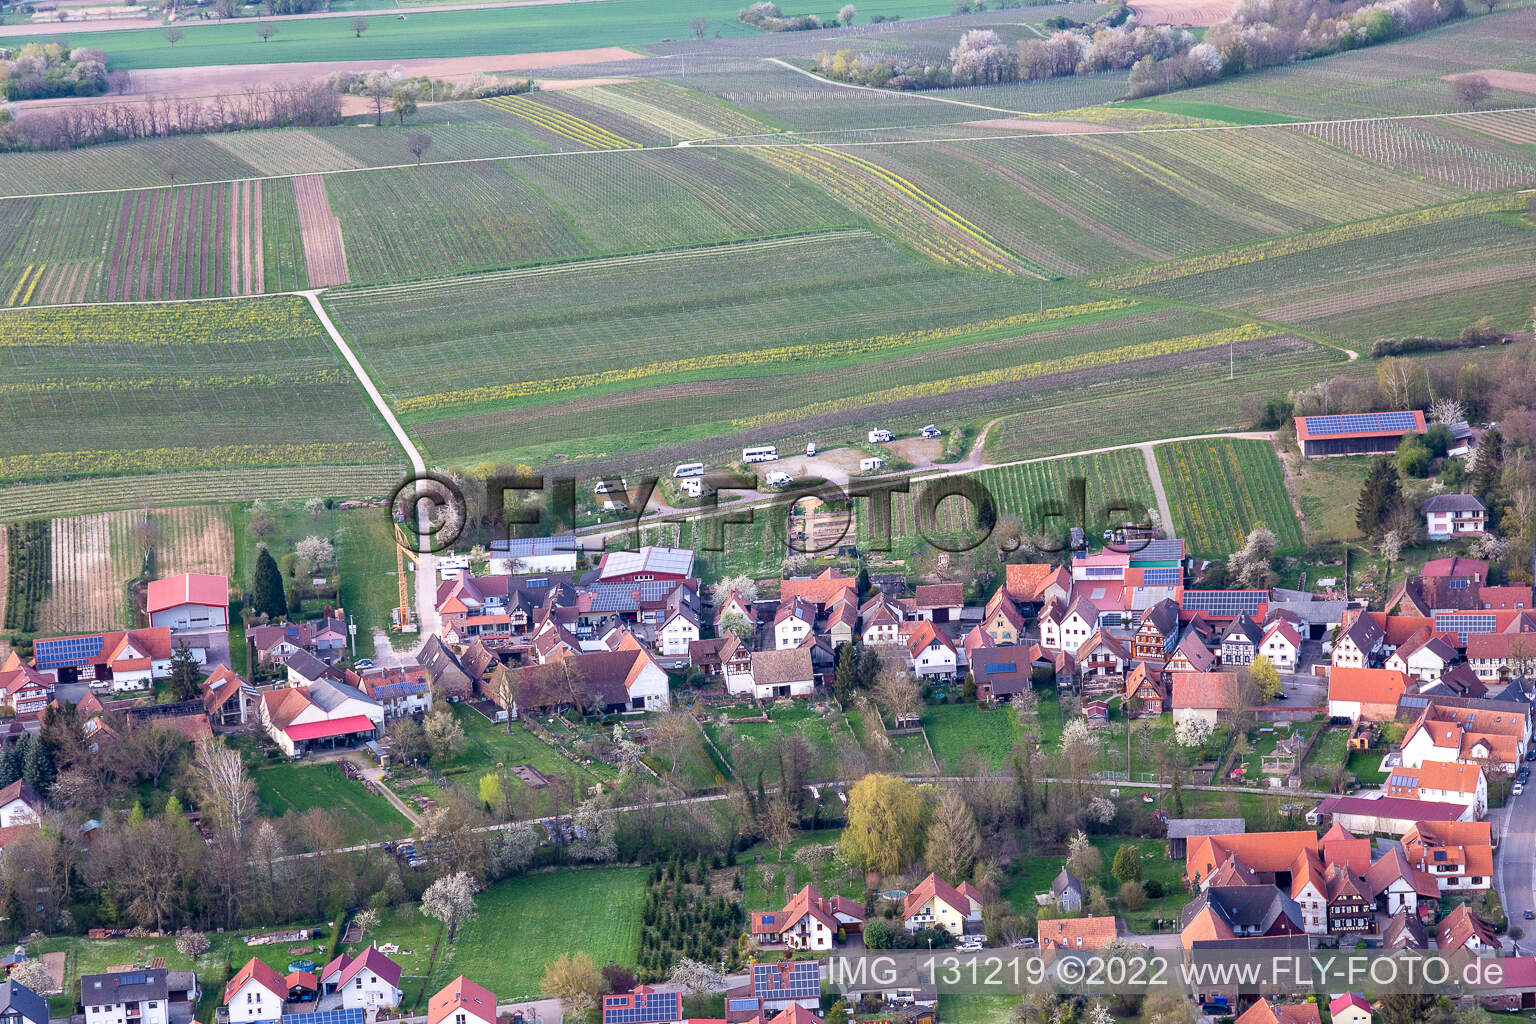 Vue aérienne de Aire de camping-car Geiger à Dierbach dans le département Rhénanie-Palatinat, Allemagne